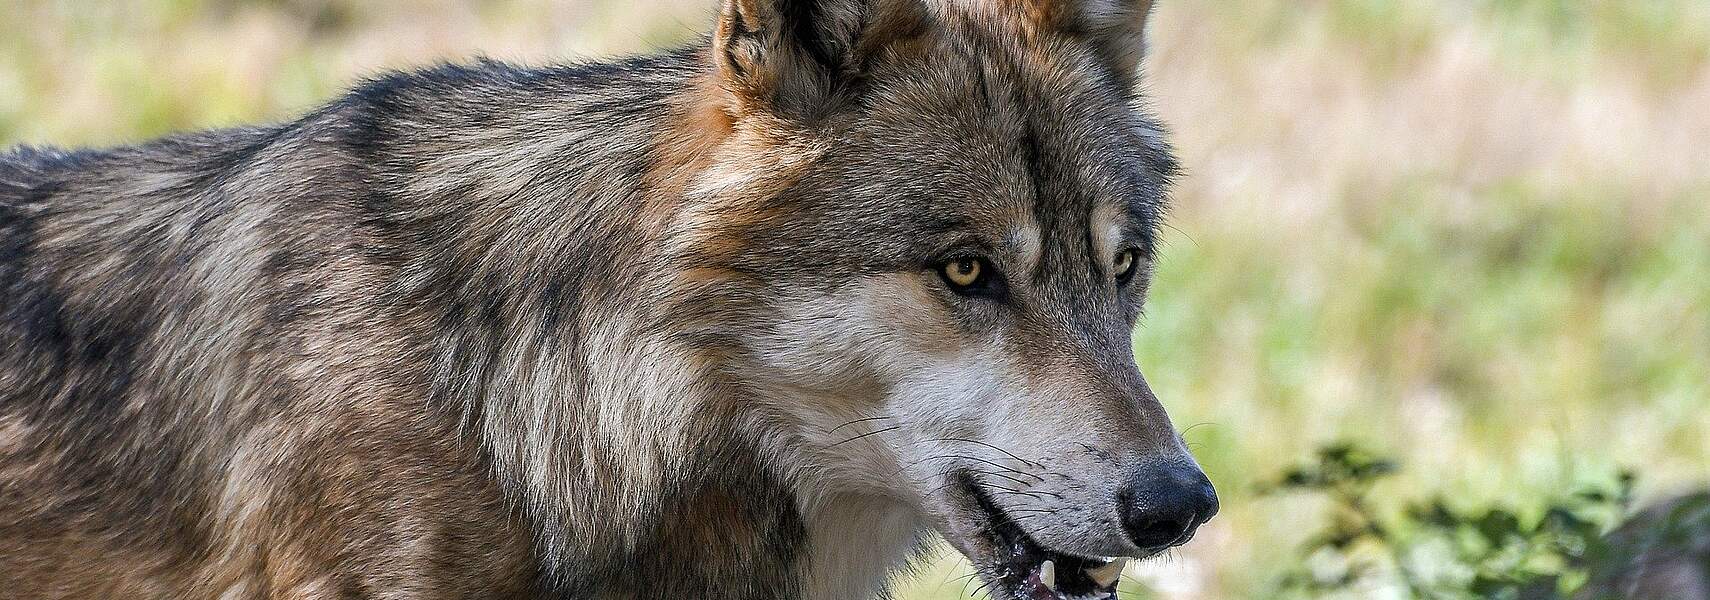 Herdenschutz reicht nicht – Regulierung des Wolfsbestandes ist unausweichlich